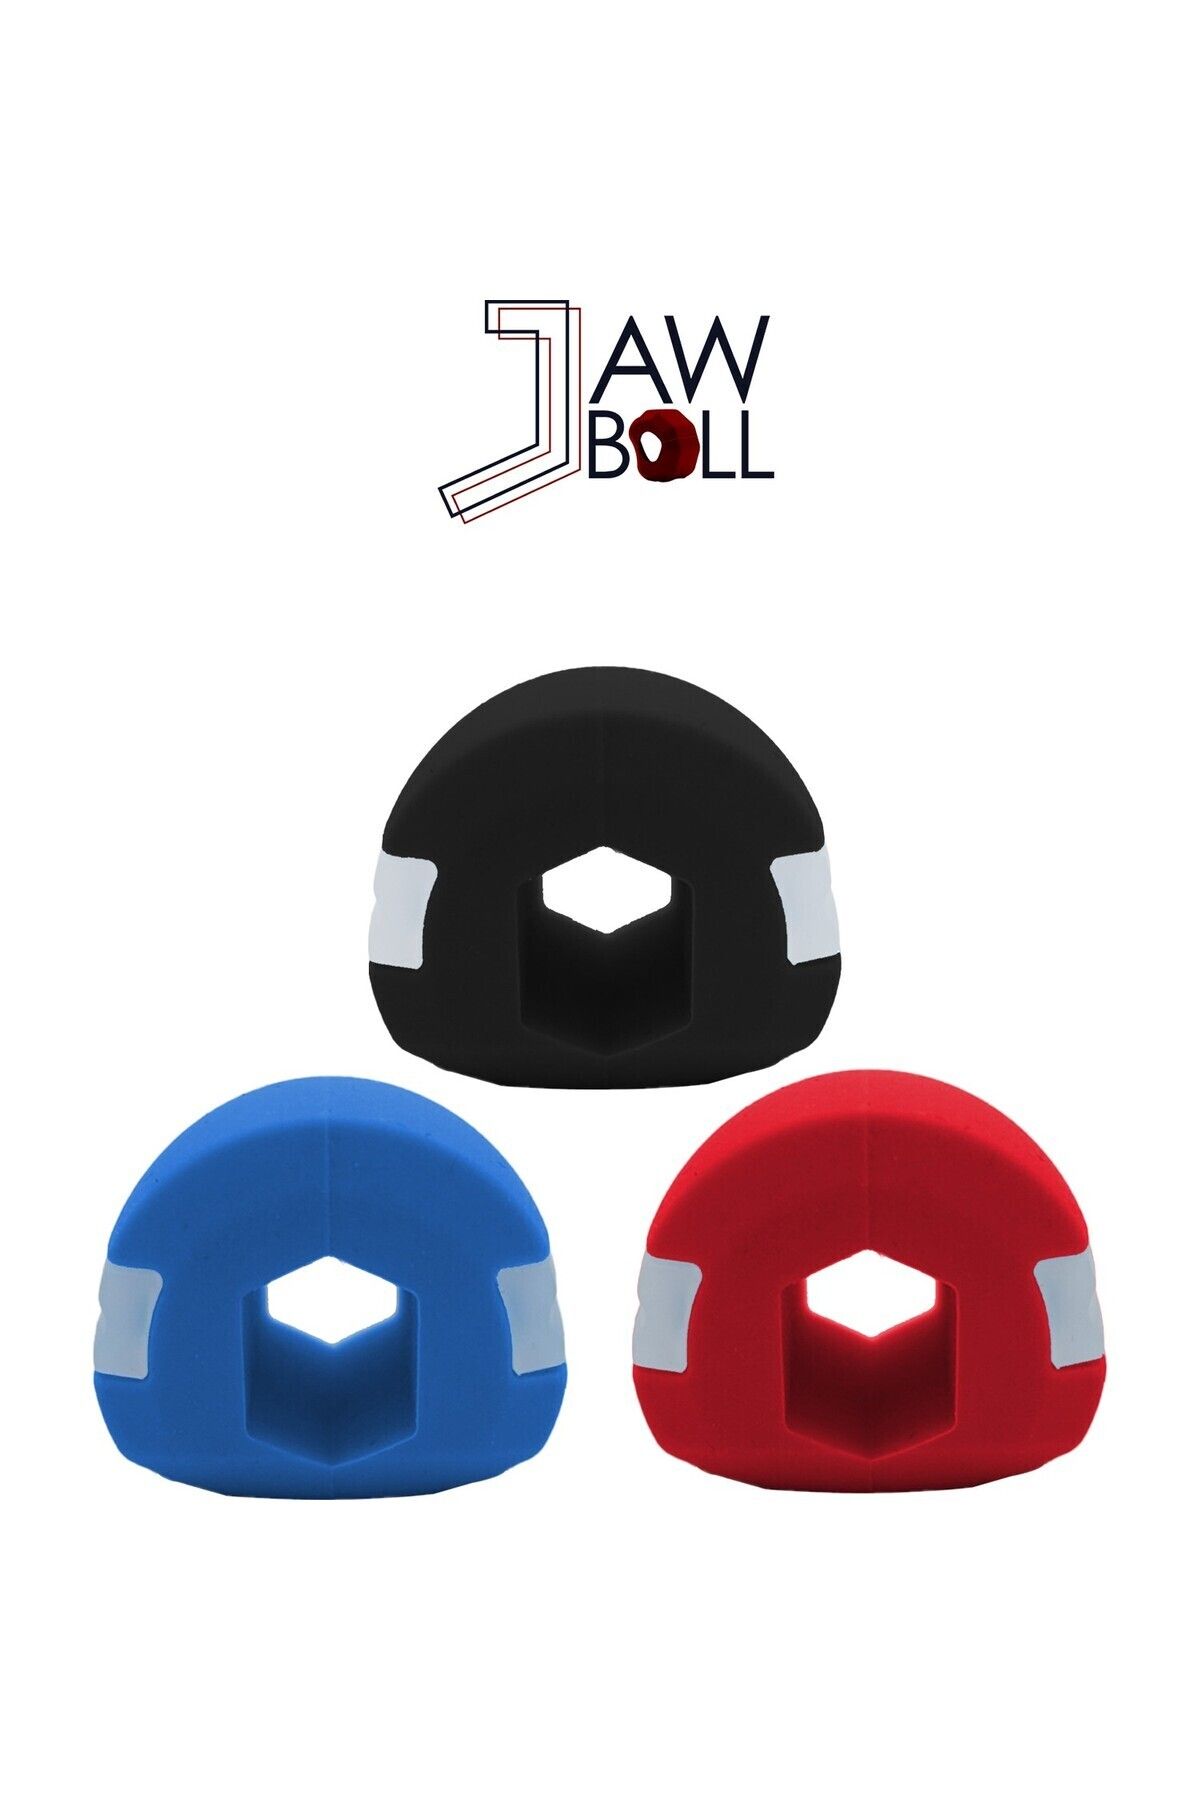 Jawball Çene Egzersiz Topu 3'lü Set Başlangıç - Orta Ve Zor Ball Set Çene Kası